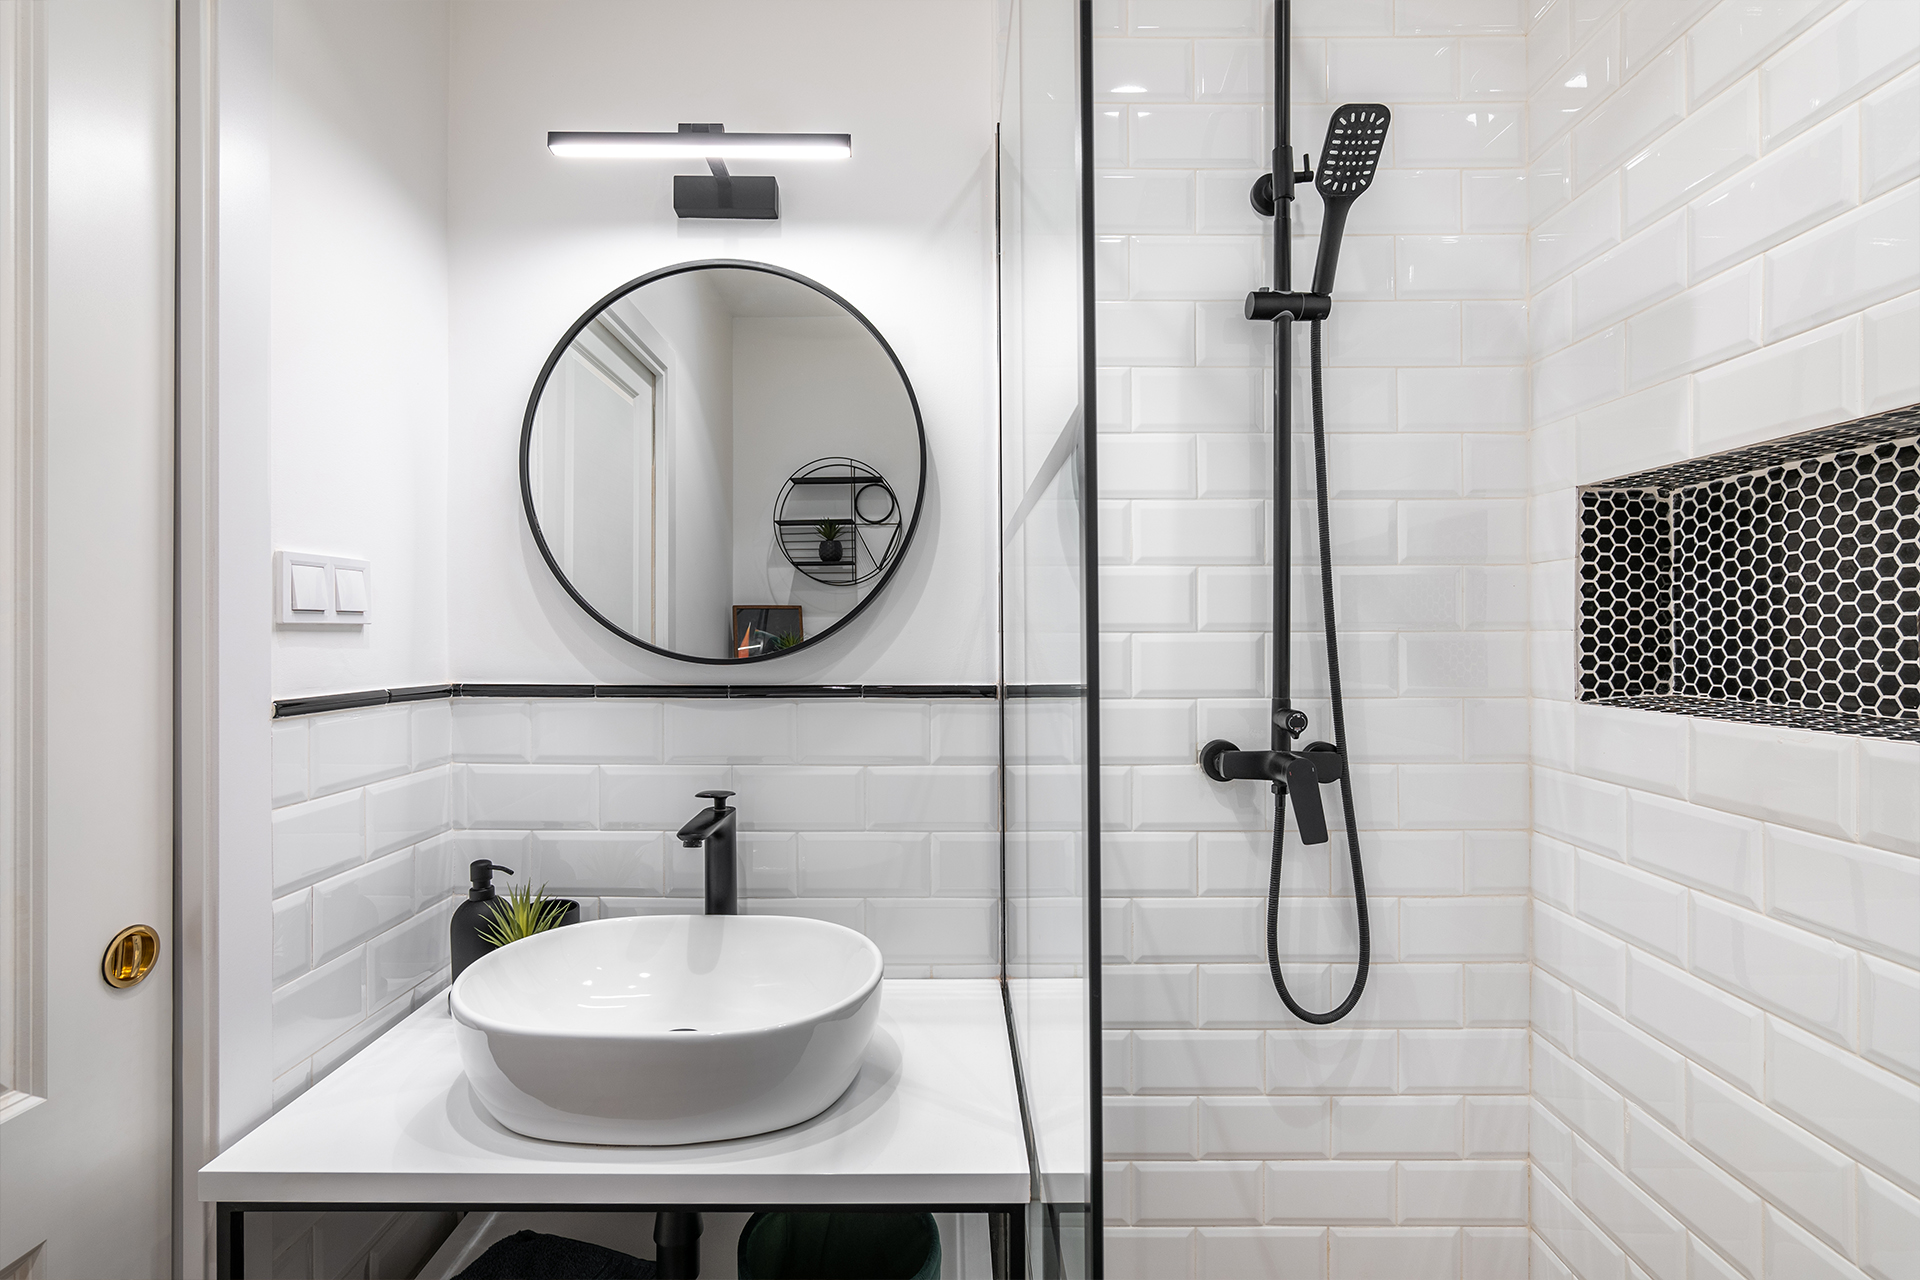 Дизайн современной ванной комнаты маленького размера: 58 фото оригинальных интерьеров в хрущевках